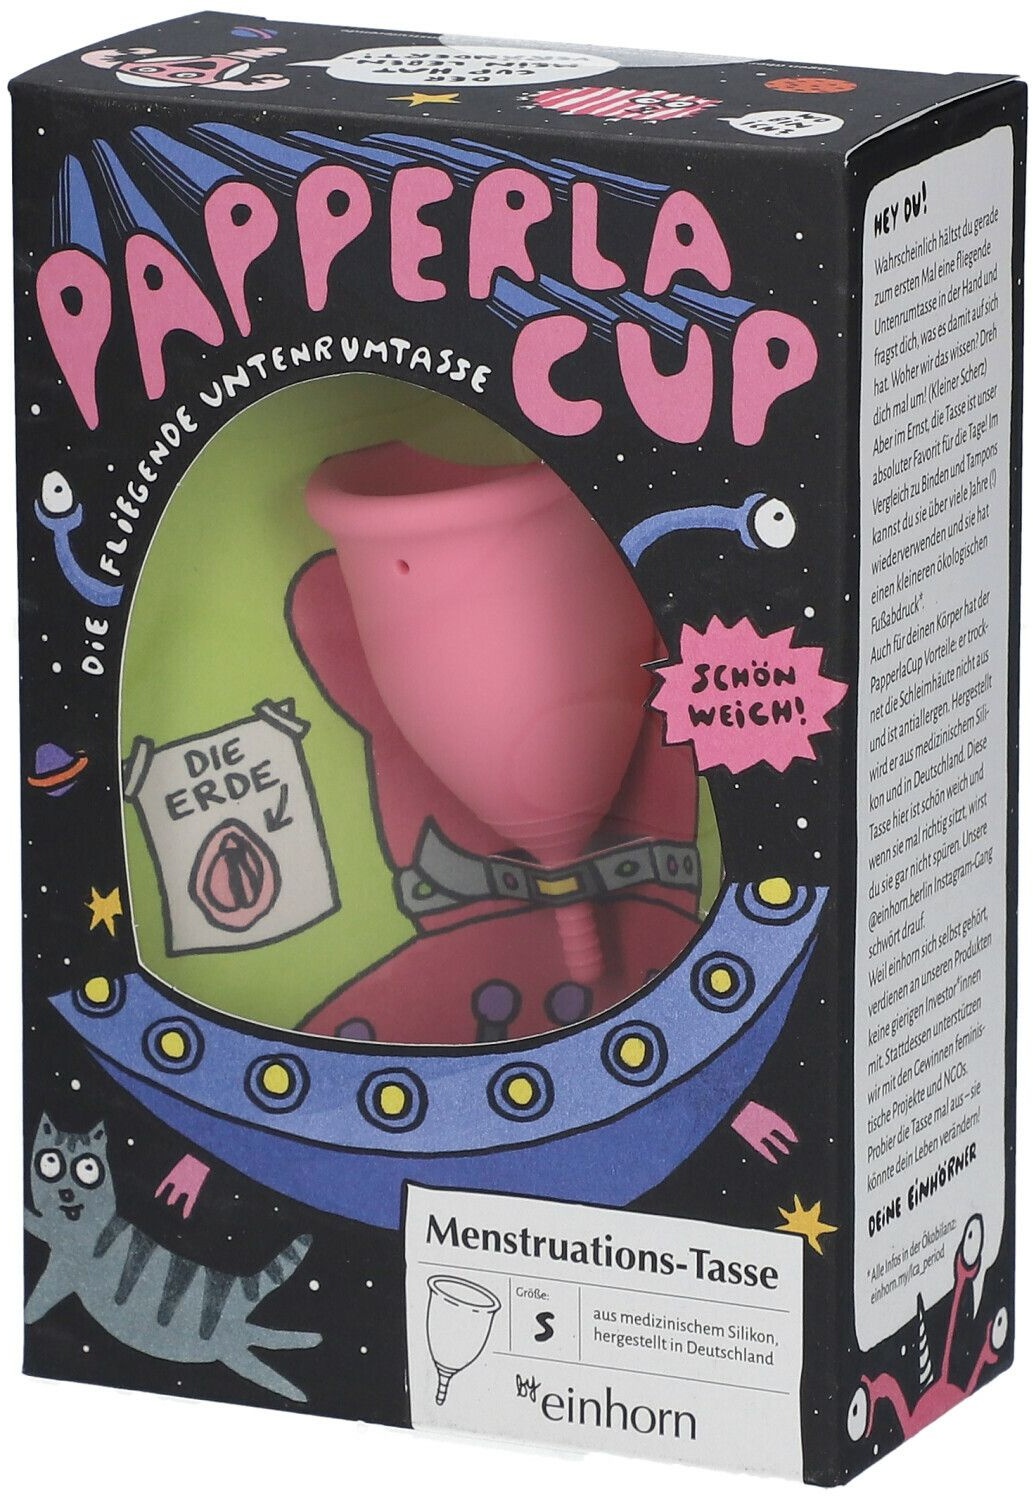 by einhorn Papperla CUP Menstruations-Tasse klein